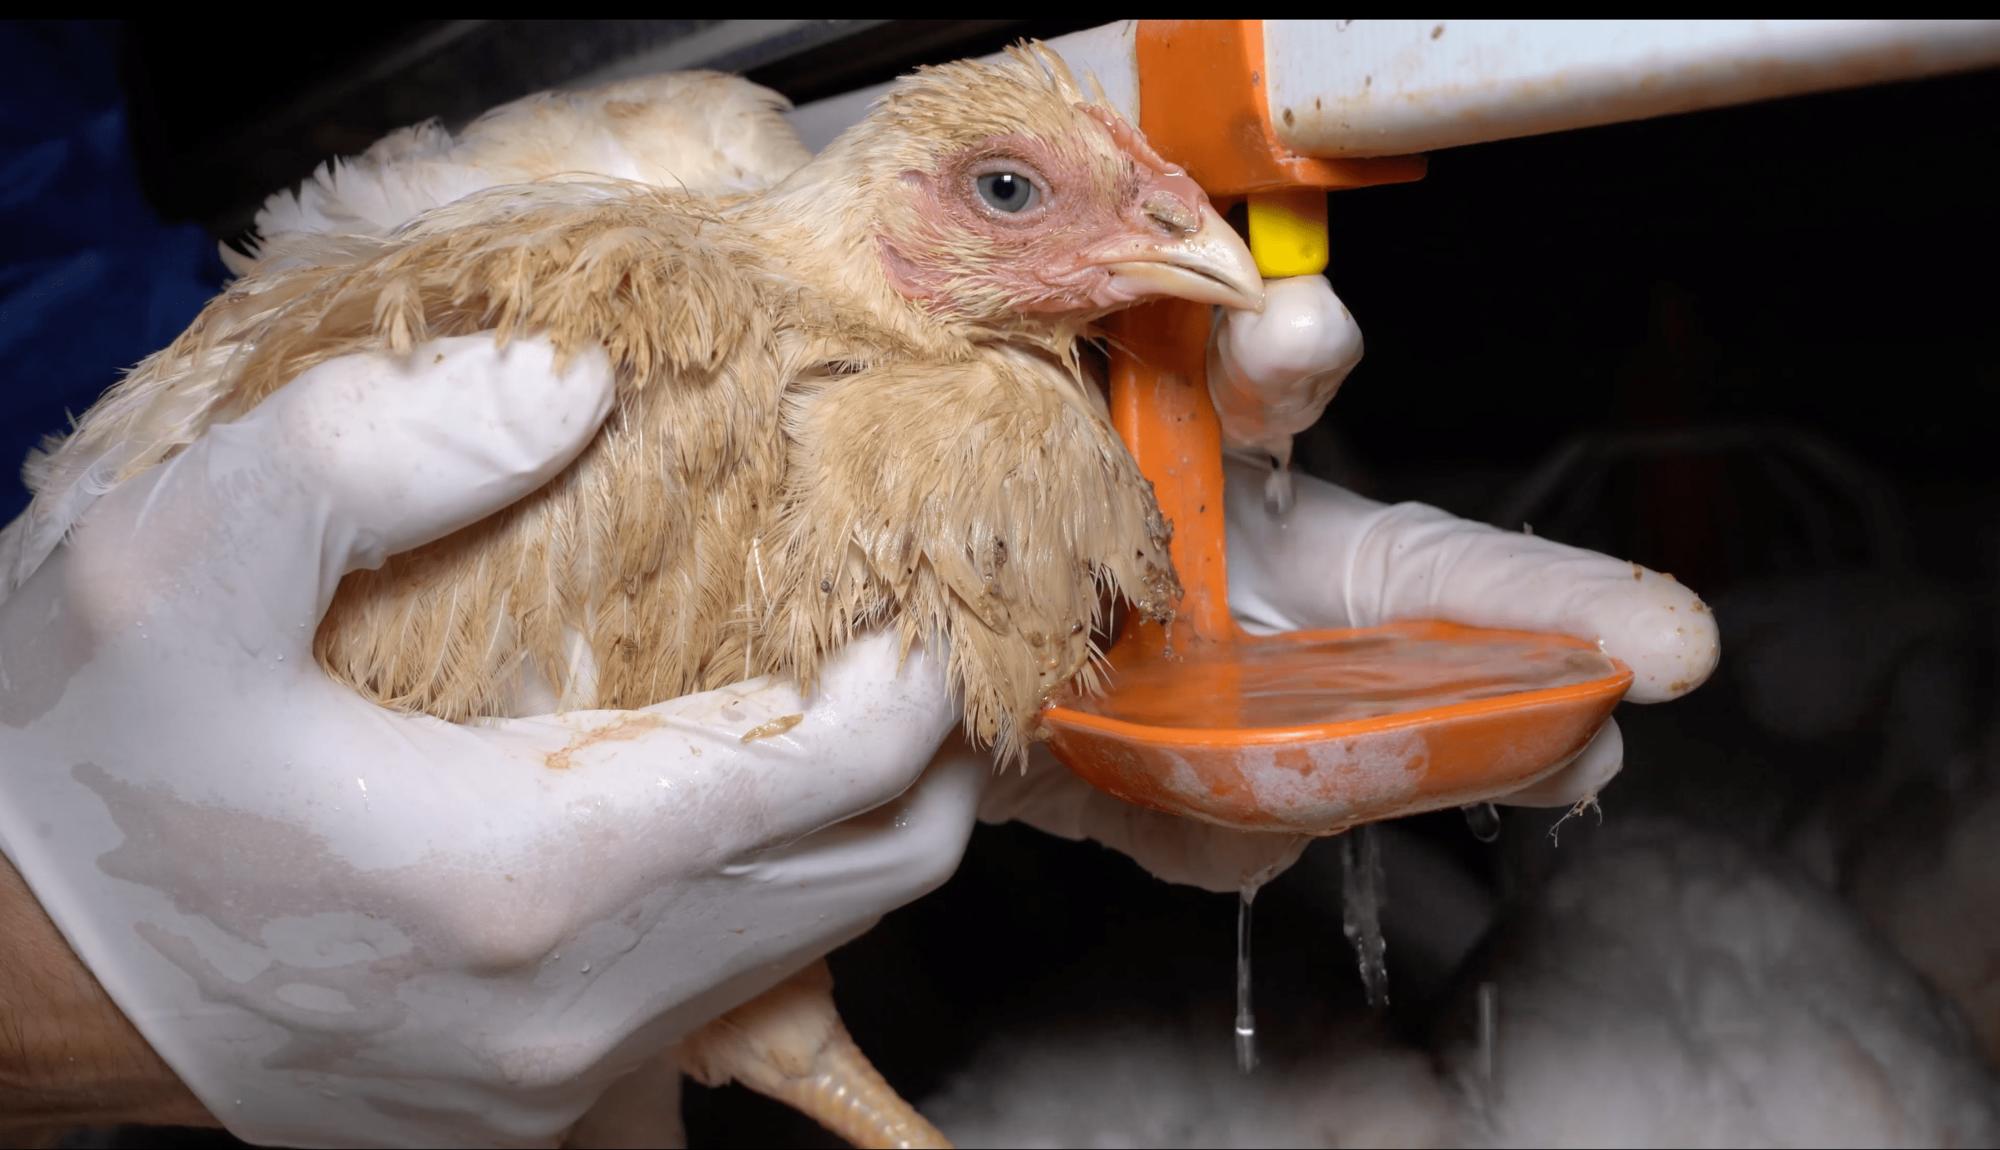 Investigación de Equalia sobre maltrato animal en granjas avícolas alemanas vinculadas a Lidl - 2